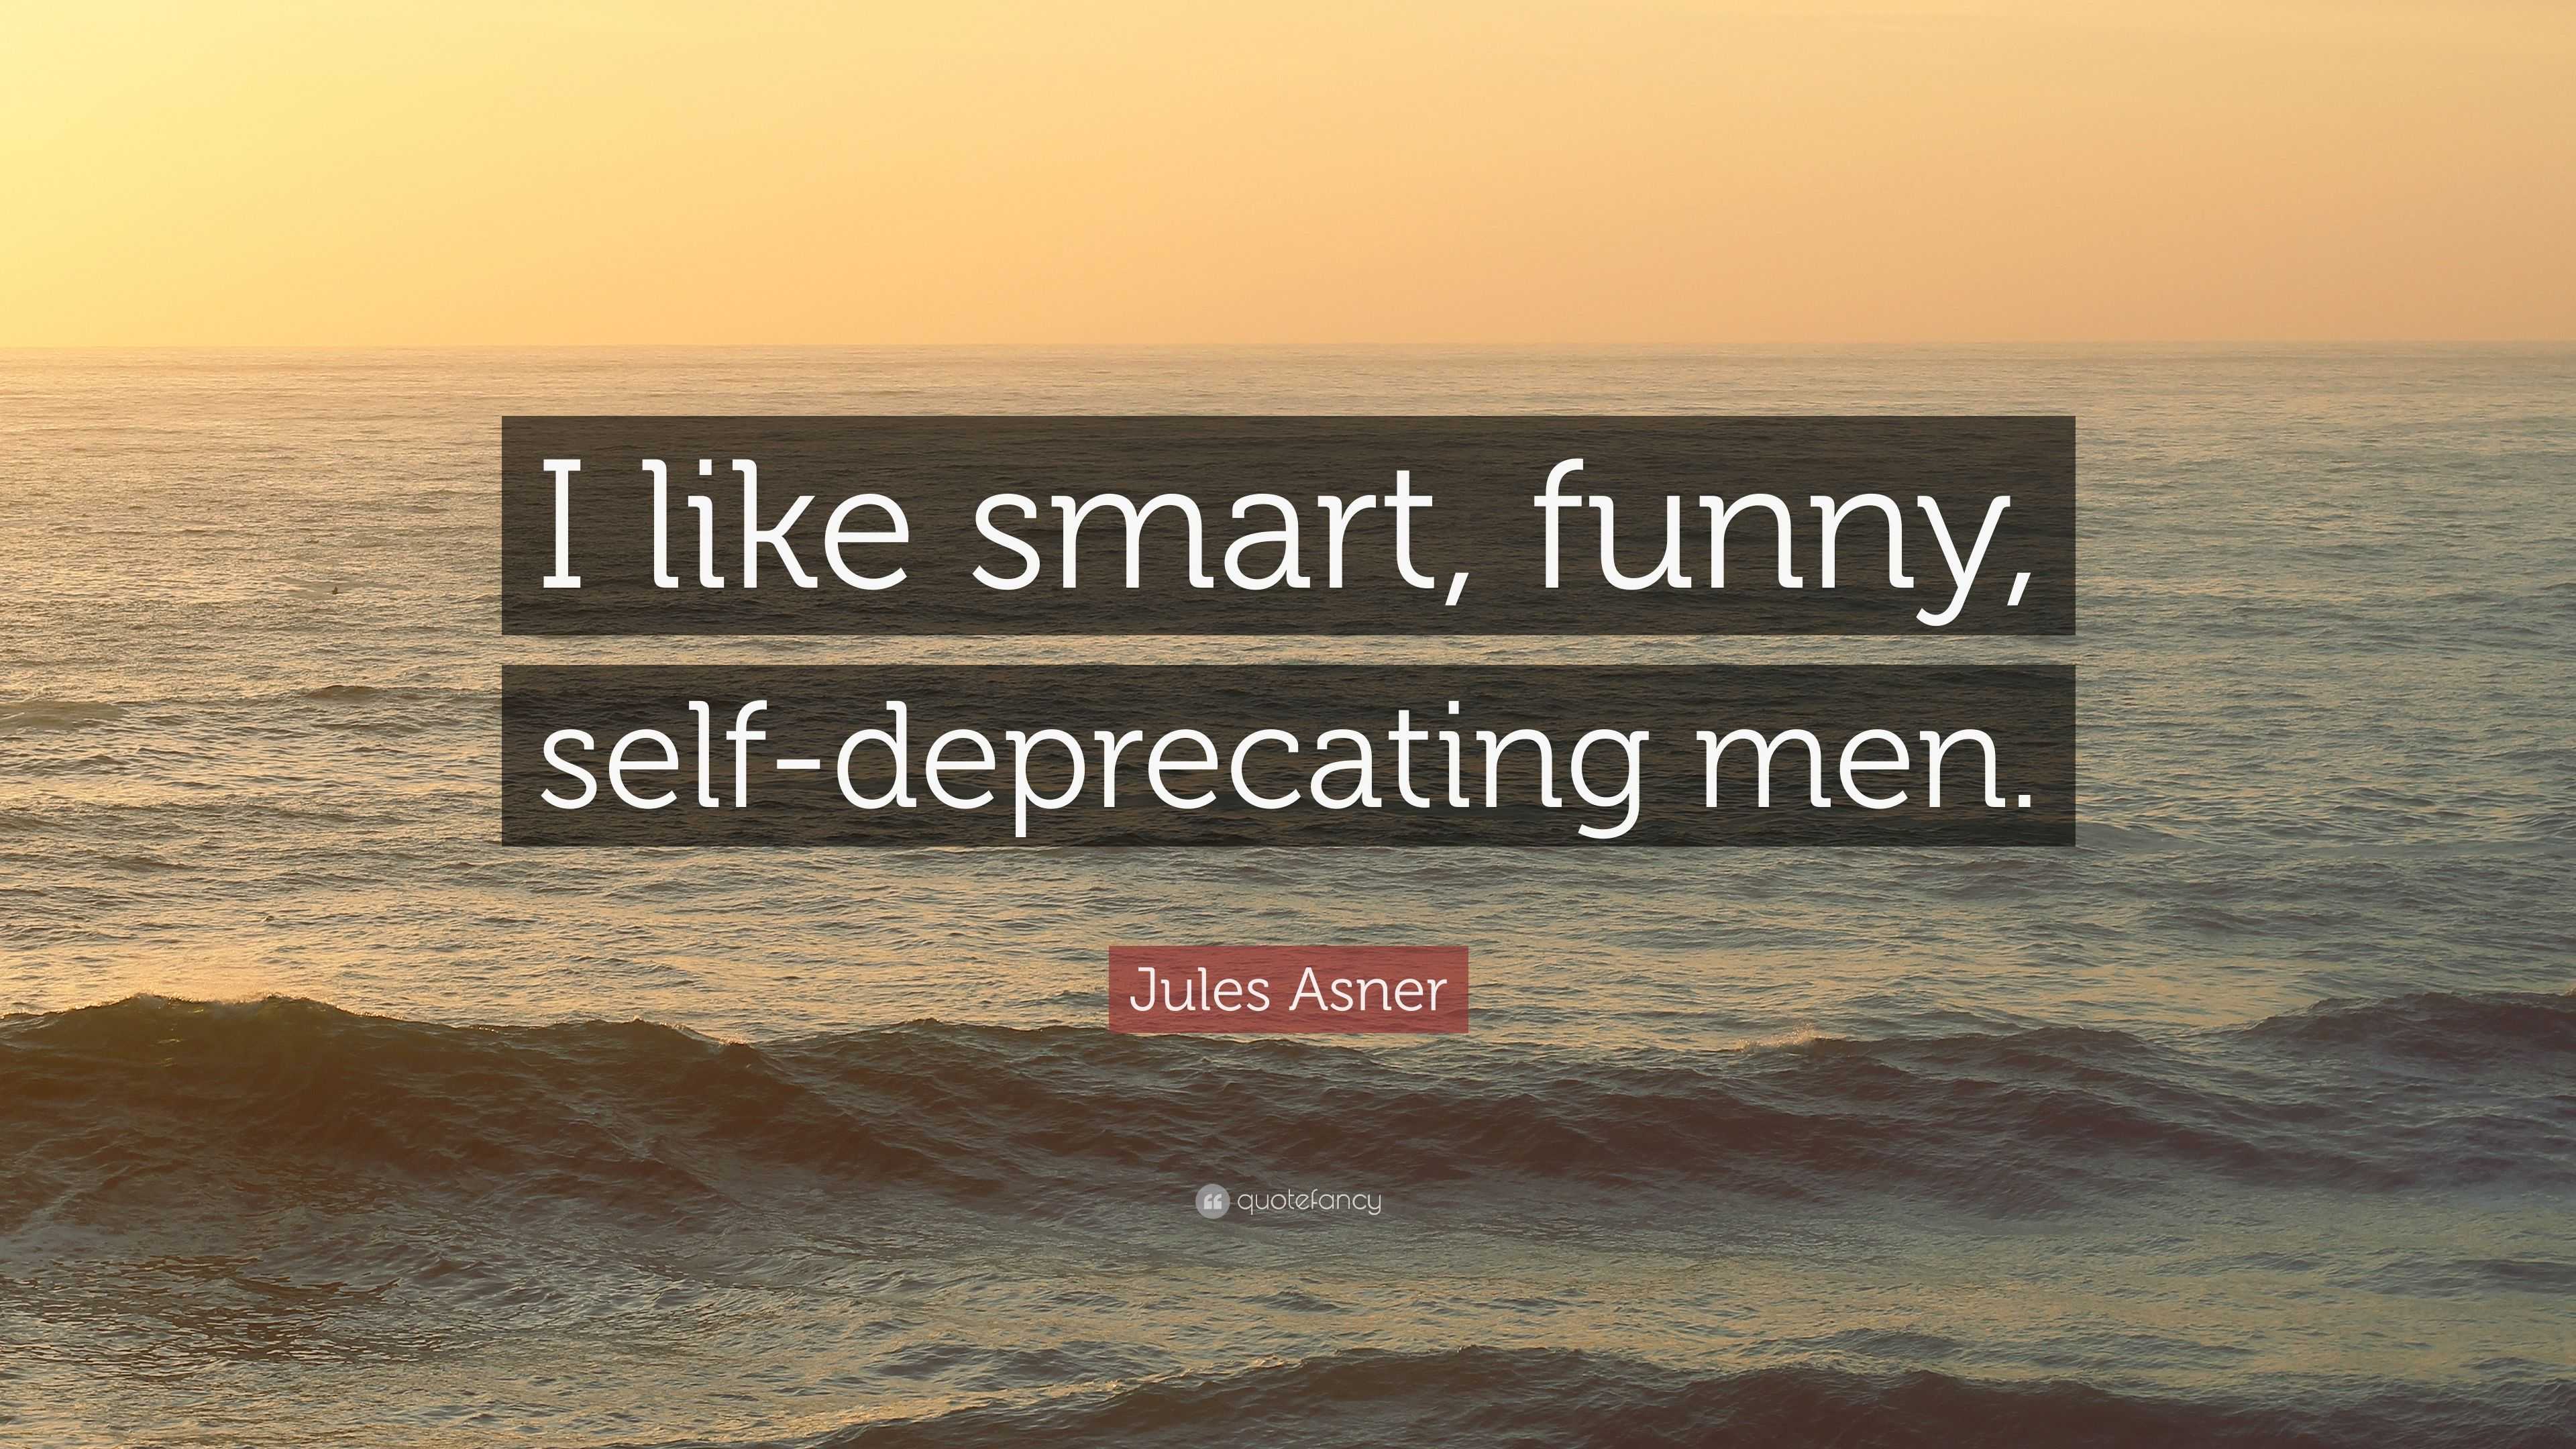 Jules Asner Quote: “I like smart, funny, self-deprecating men.”